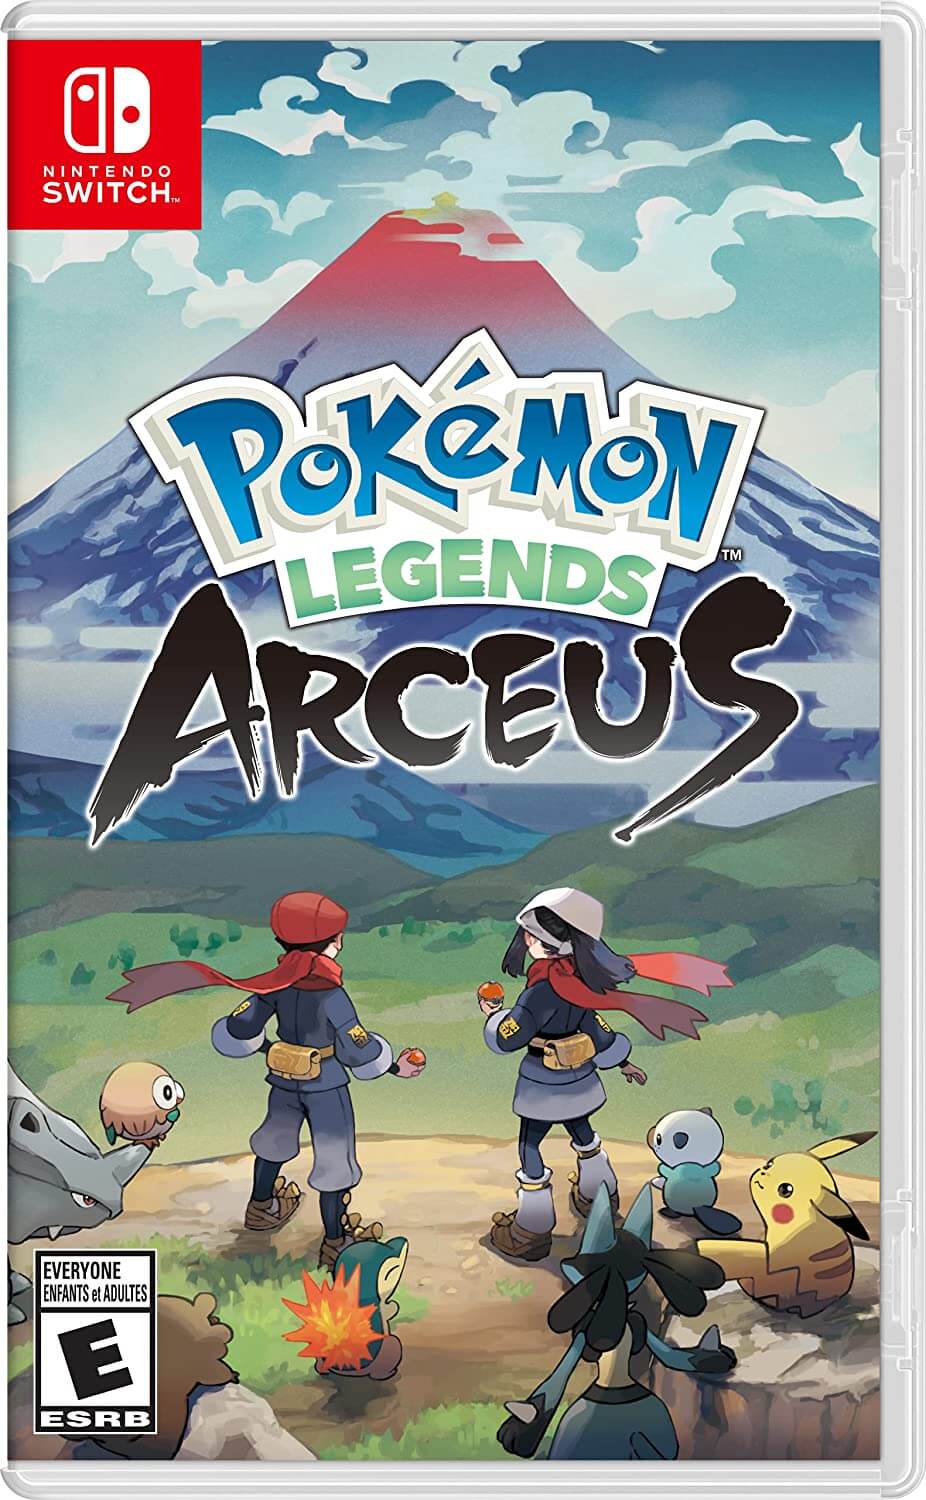 Pokémon Legends: Arceus - Nintendo Switch Games and Software - Arceus Edition